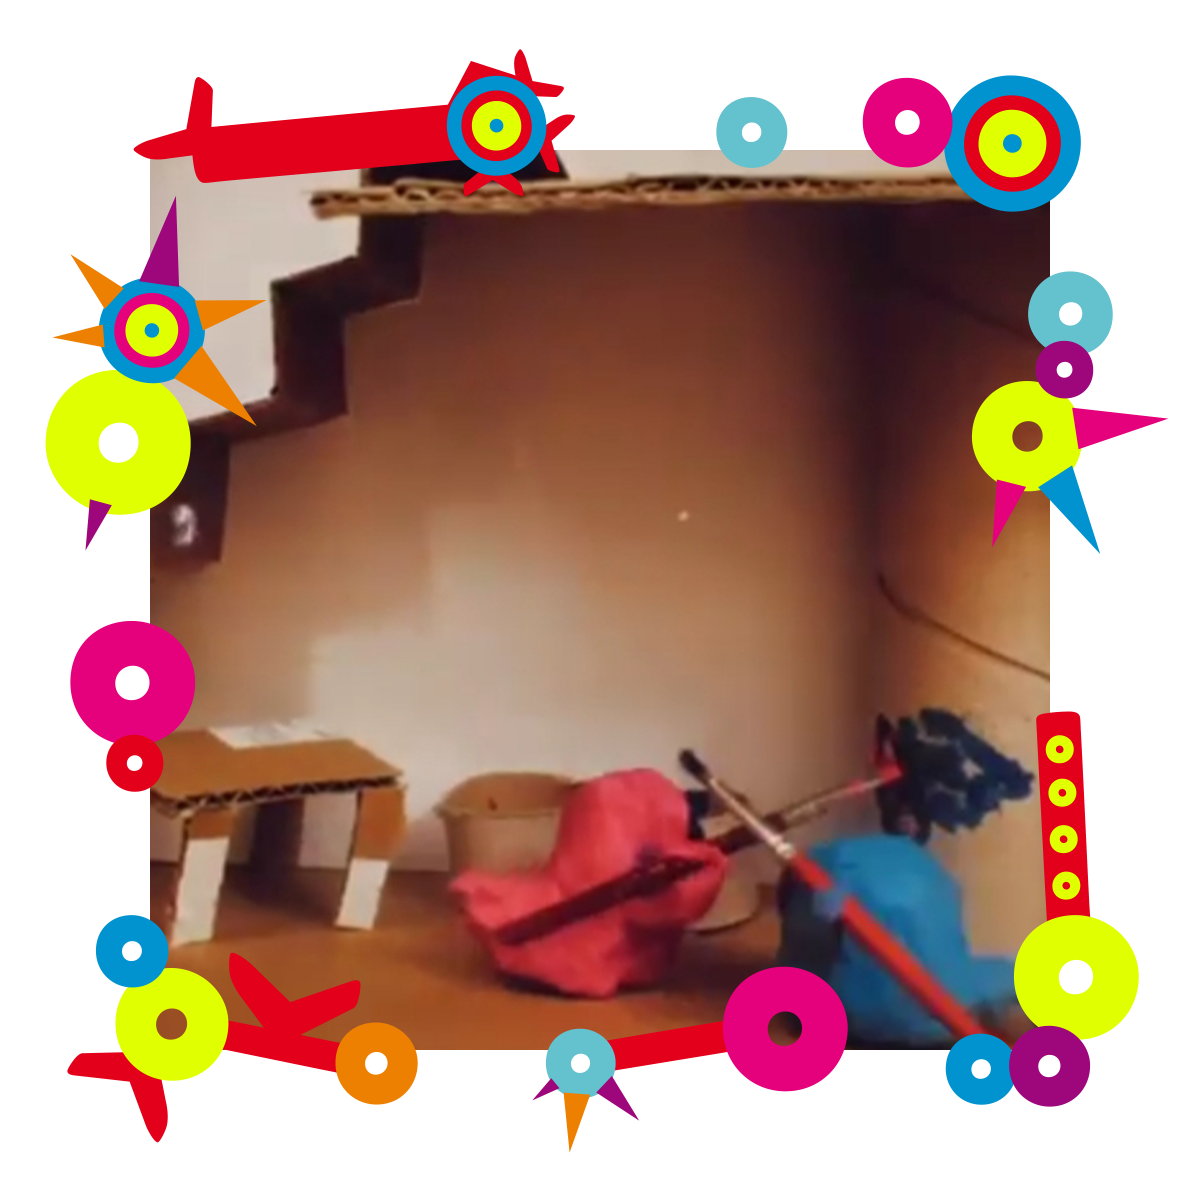 Animacja przedstawiająca pomieszczenie z kartonu. W środku kartonowy stół oraz elementy z plasteliny. Dookoła kolorowa ramka.